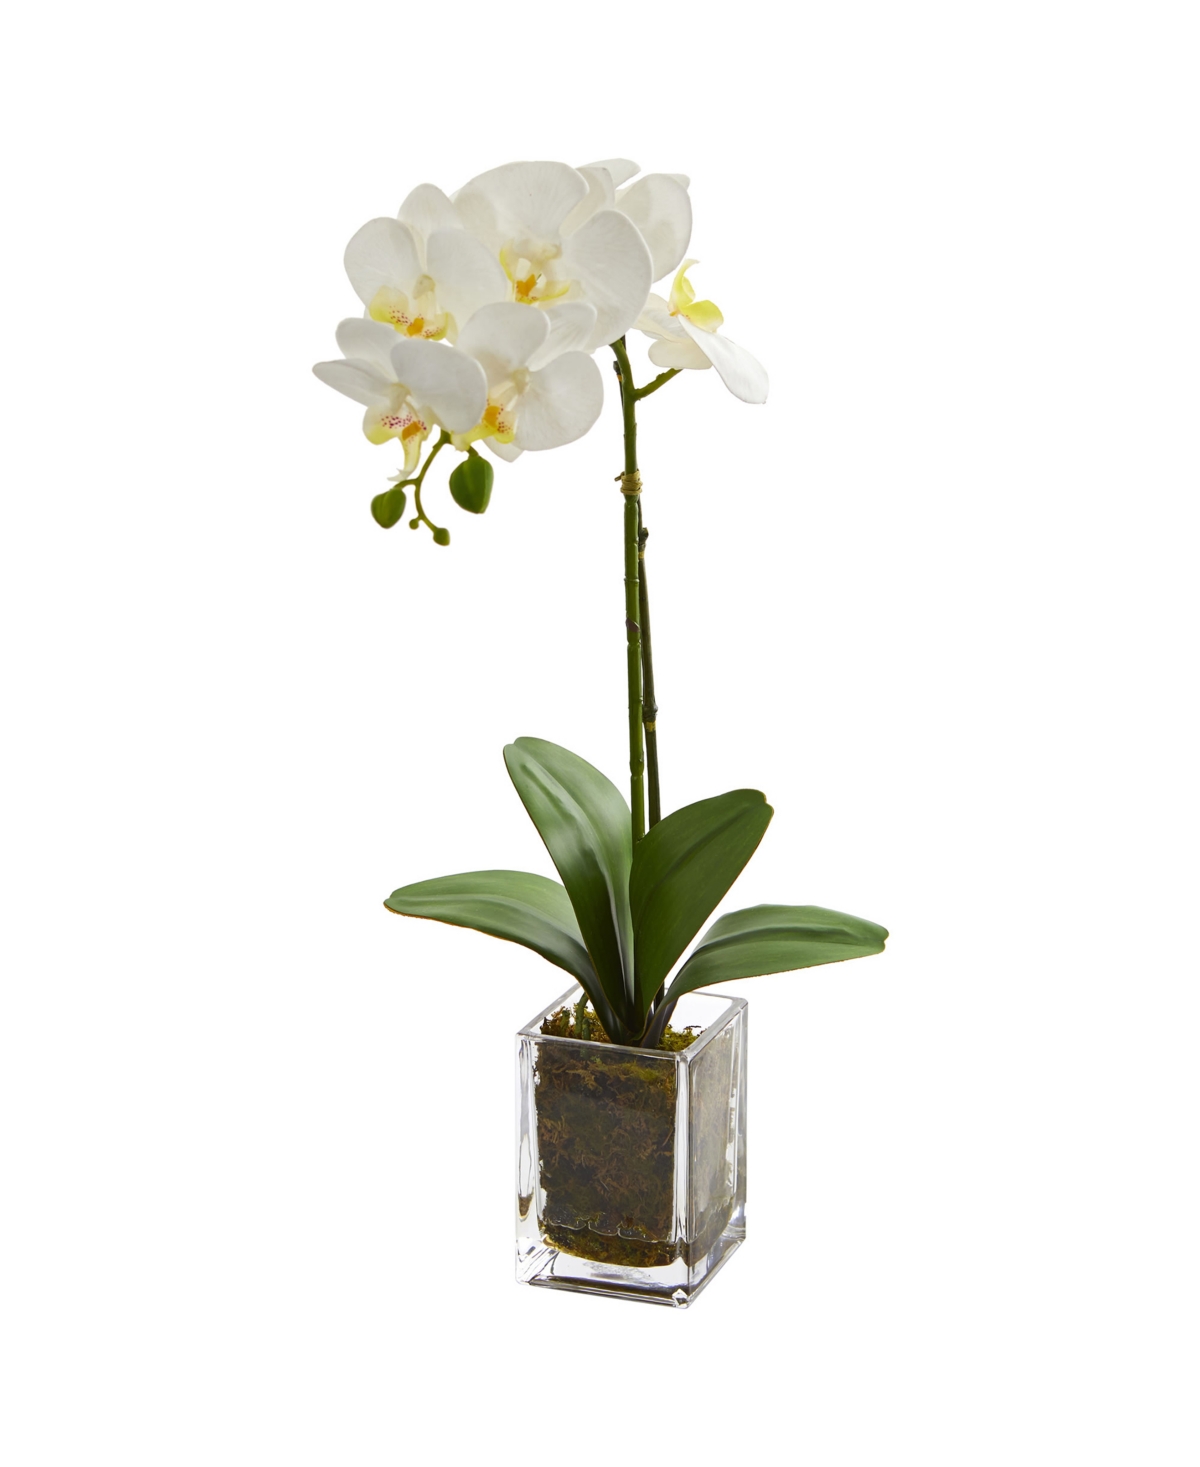 24" Orchid Phalaenopsis Artificial Arrangement in Vase - Cream